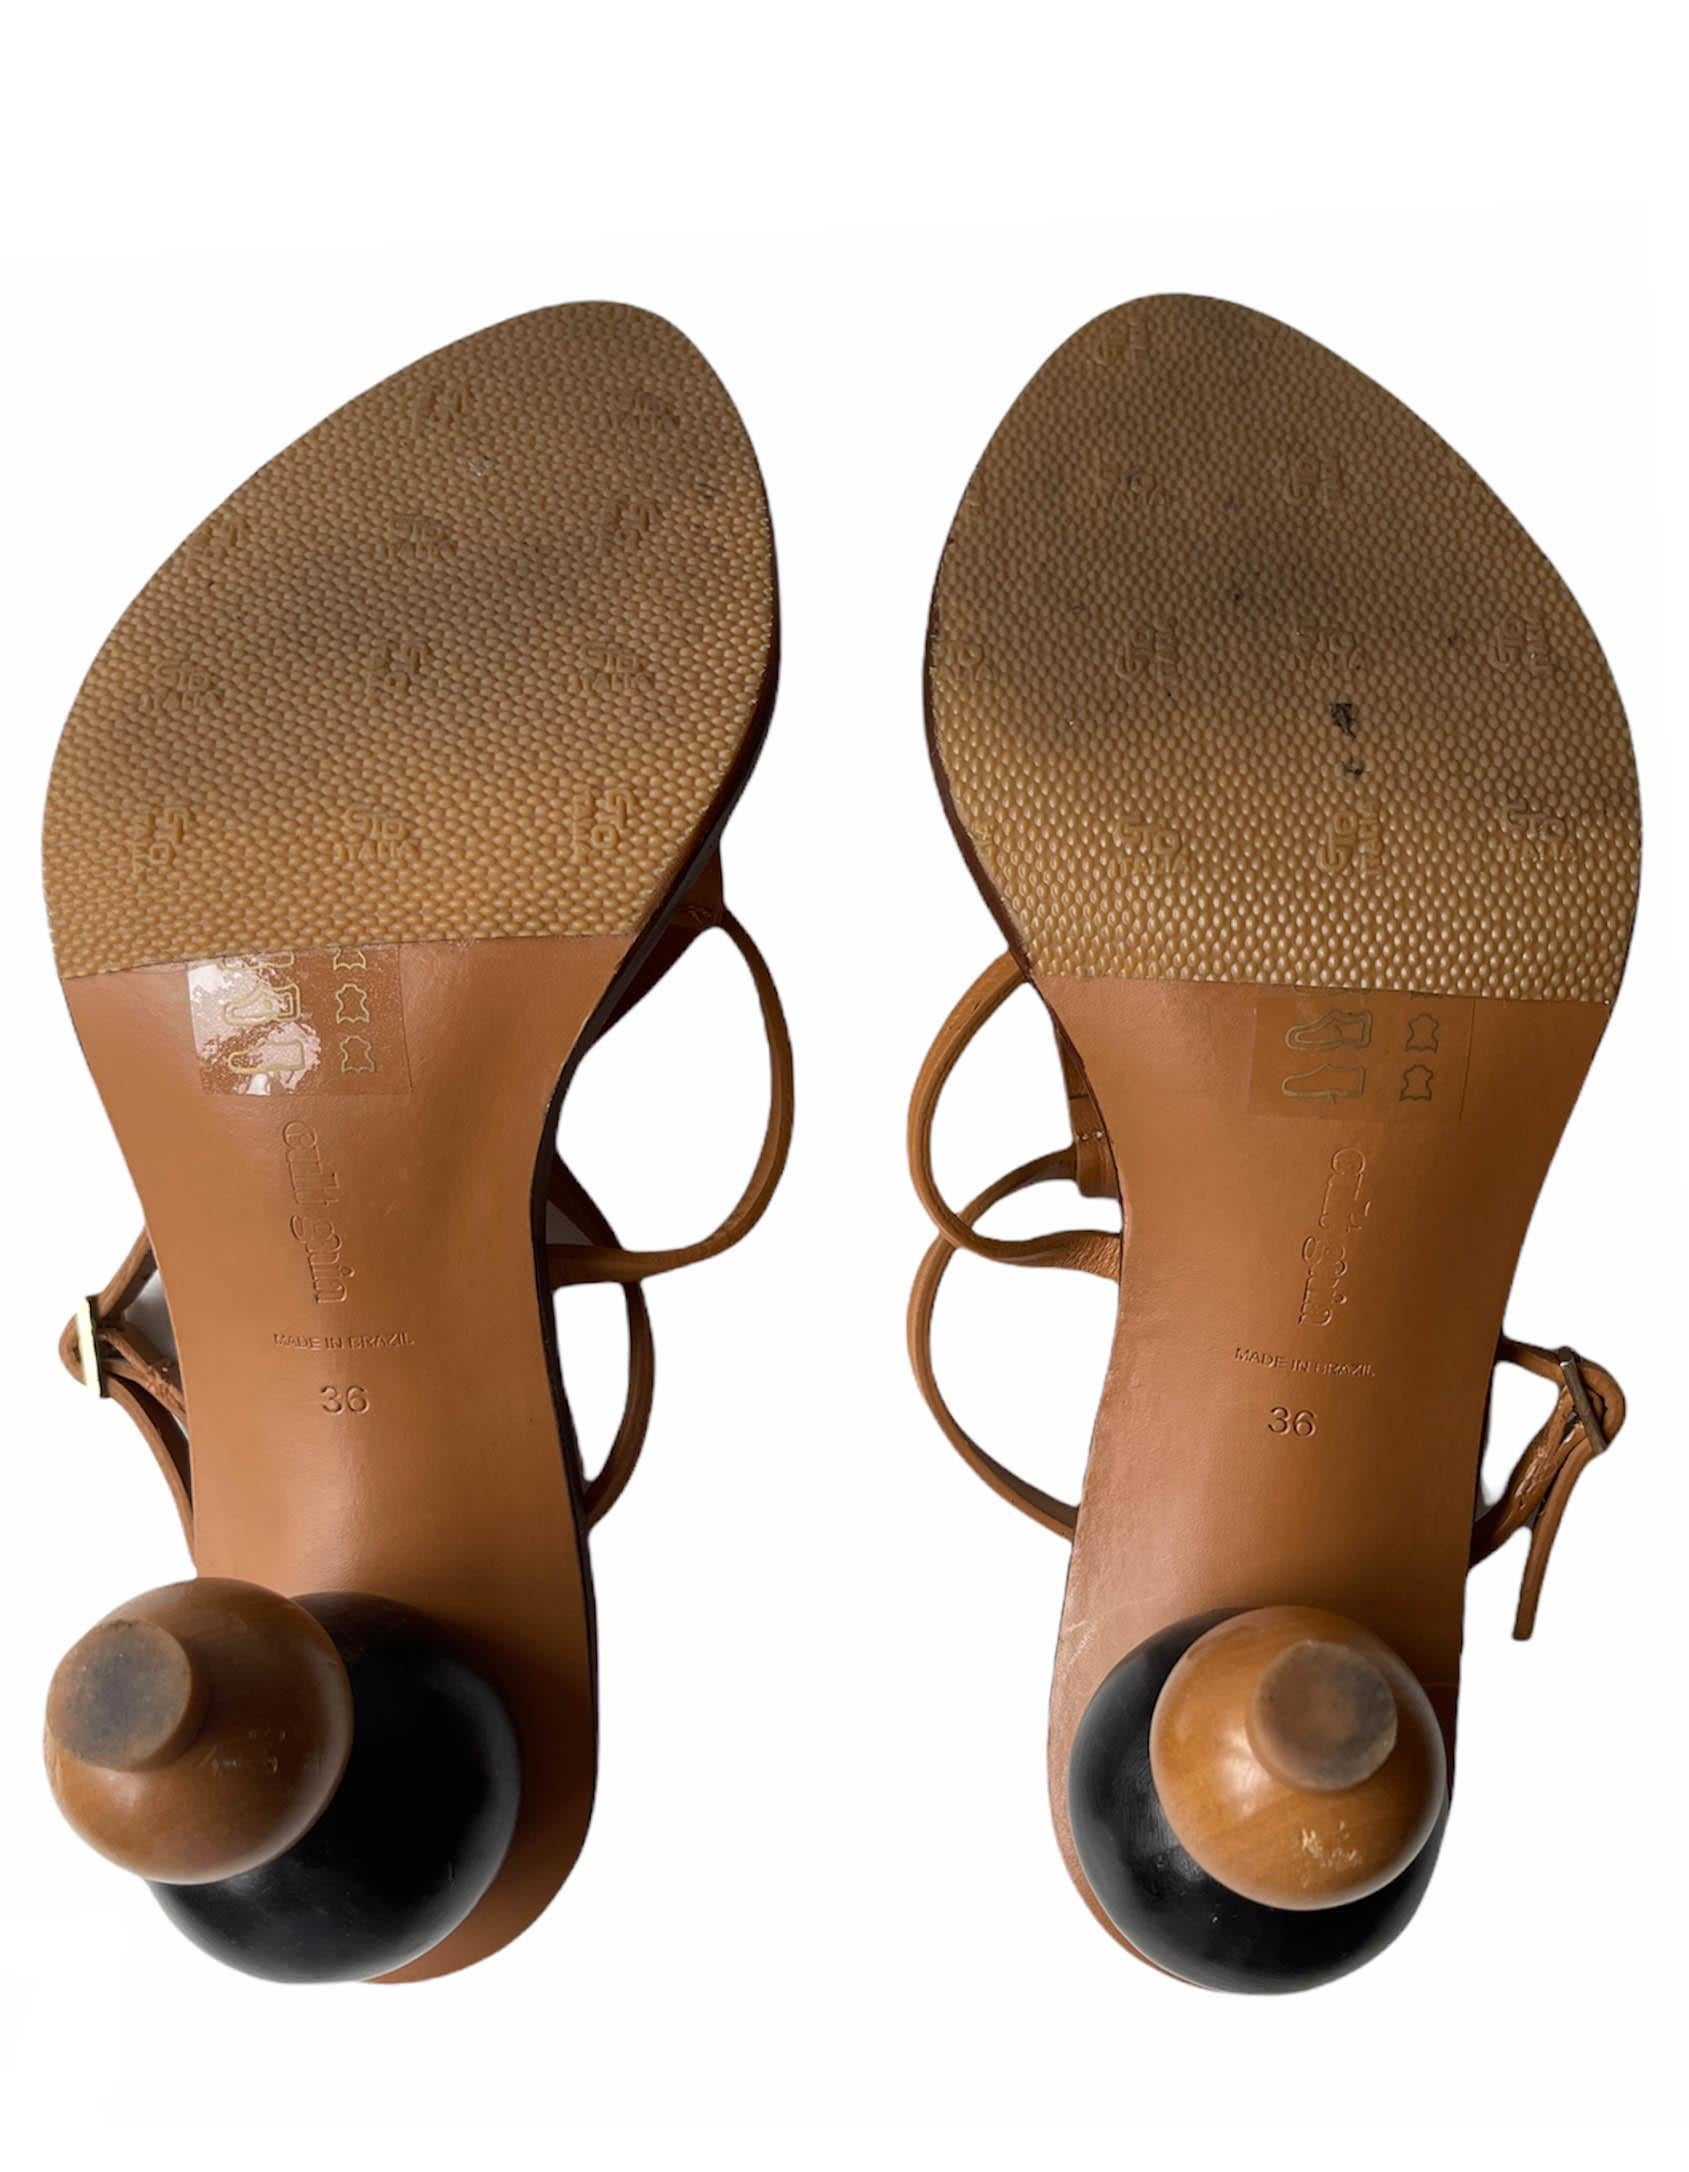 Women's Cult Gaia Brown Eden Leather Sandals sz 36 For Sale